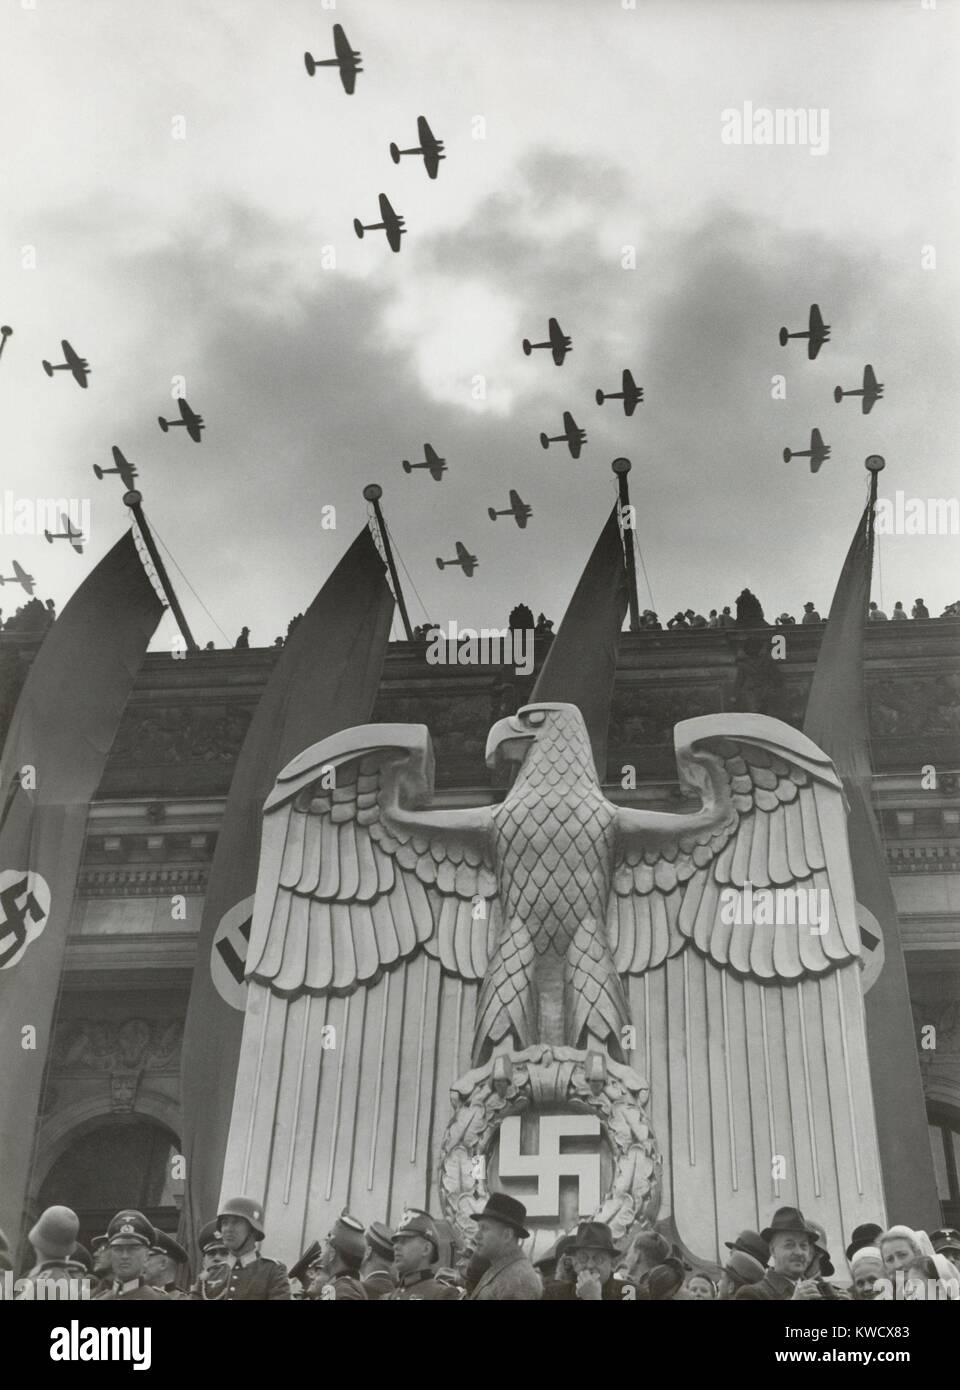 Fly-By Luftwaffe en honor del cumpleaños de Hitlers en Charlottenburg, Berlín, 20 de abril de 1939. El edificio es una escultura de un Águila Alemana Nazi y banderas con esvásticas (BSLOC 2017 2 70) Foto de stock